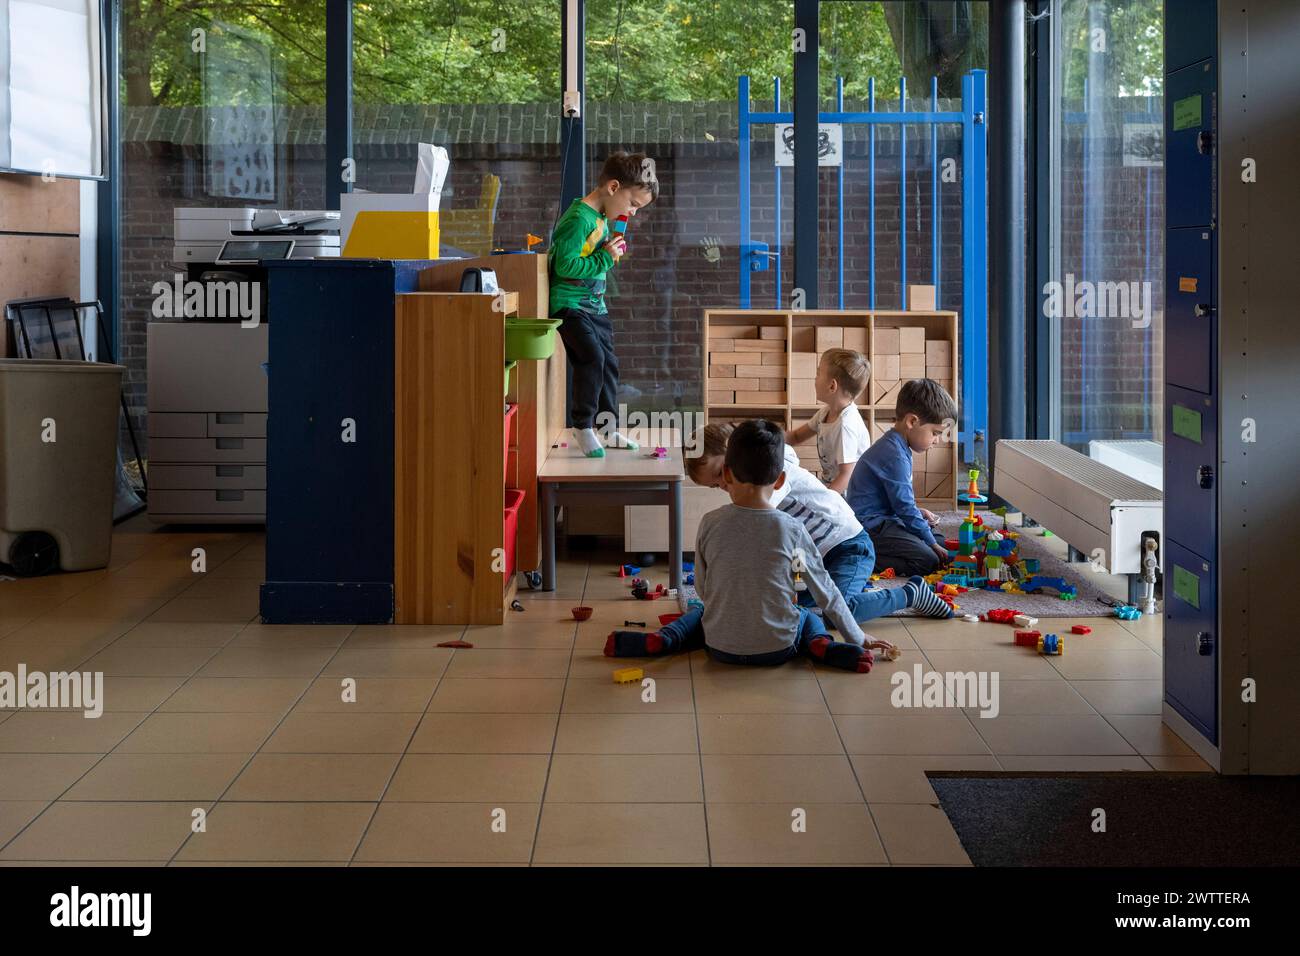 Bambini impegnati in attività ludiche in una colorata sala giochi interna. Foto Stock